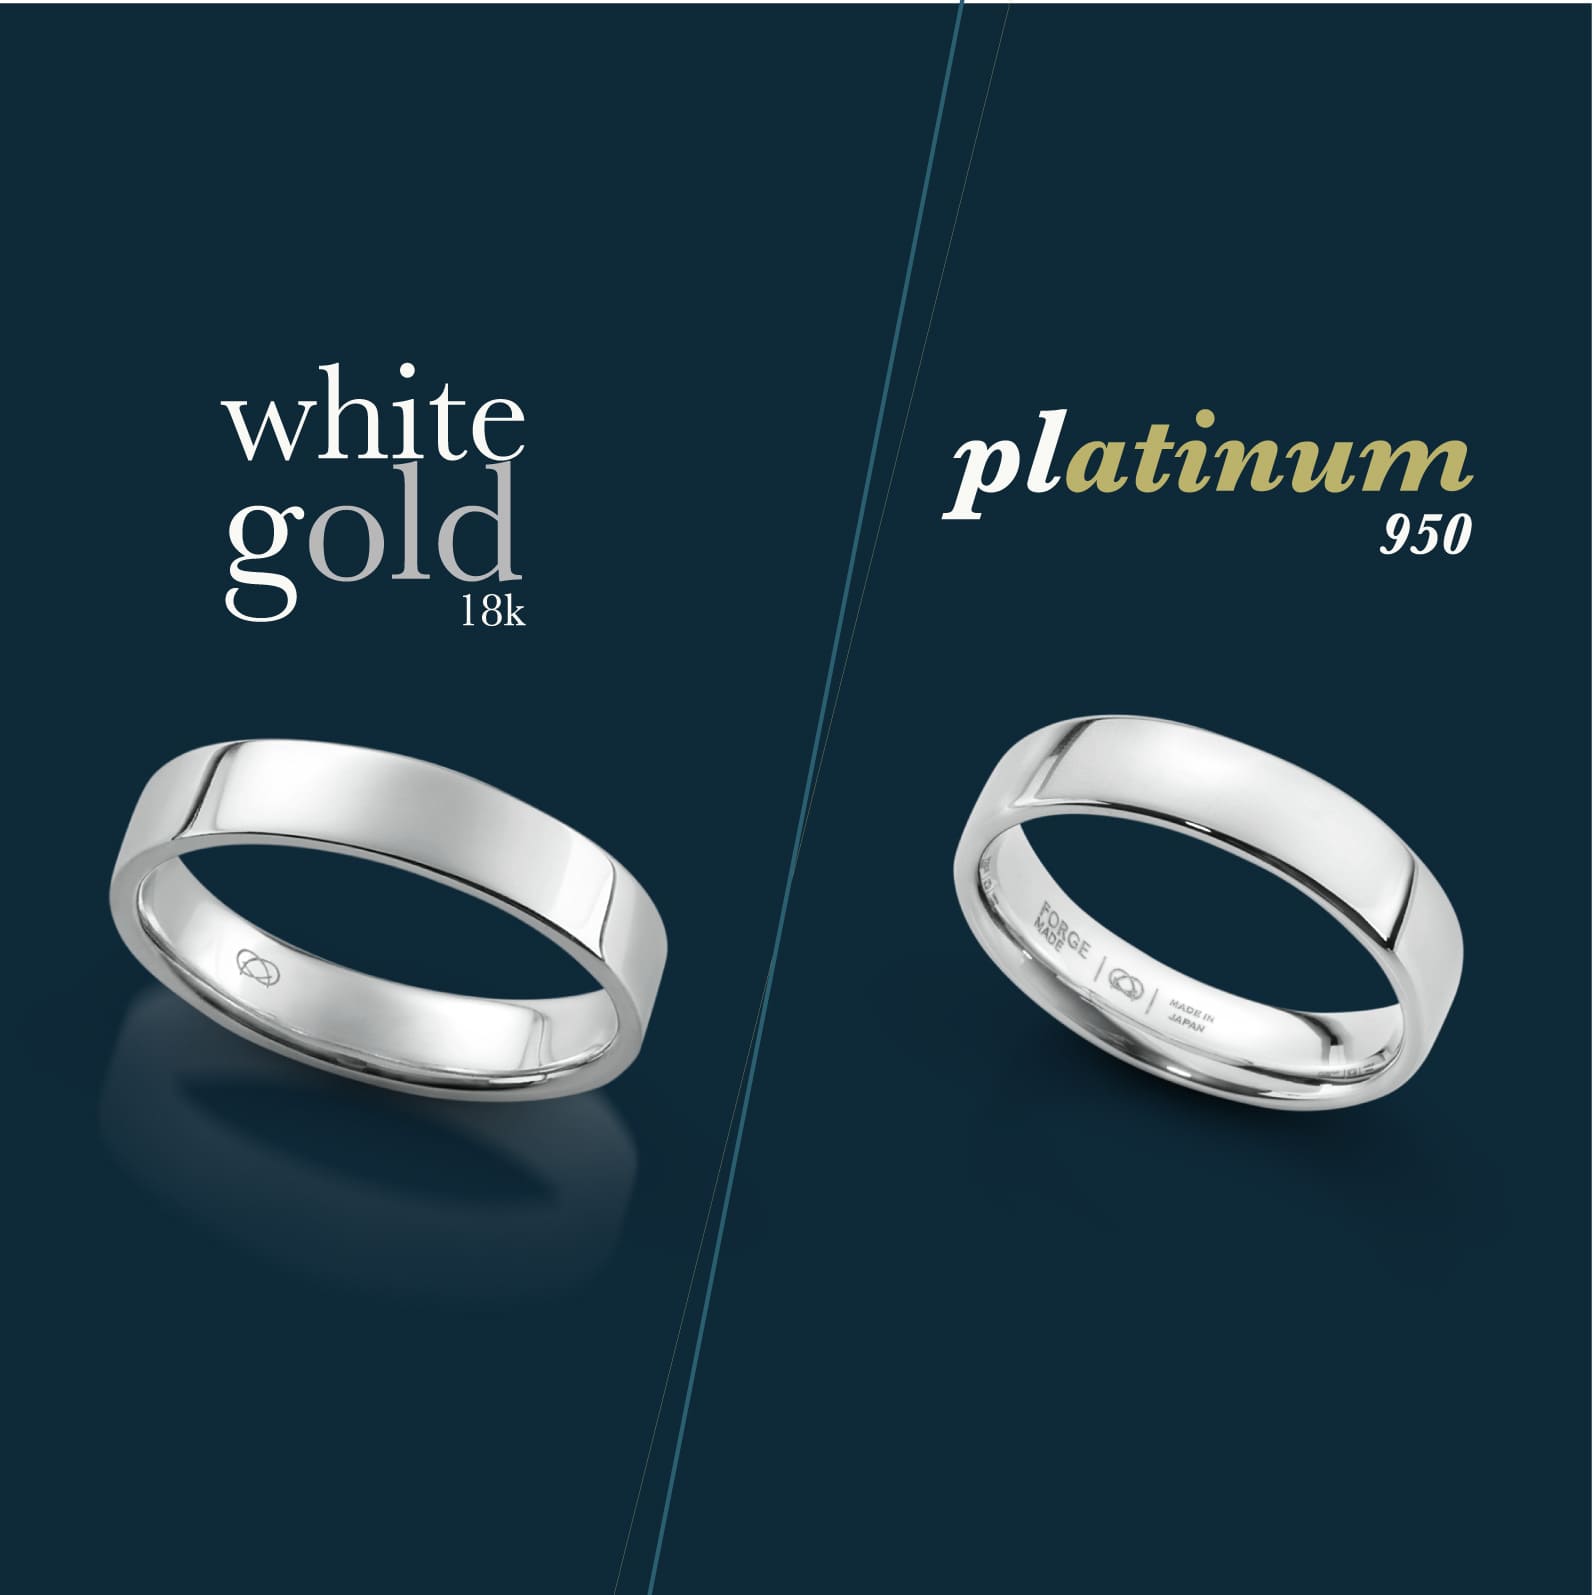 ทองขาว และทองคำขาว คือสิ่งเดียวกันหรือไม่?